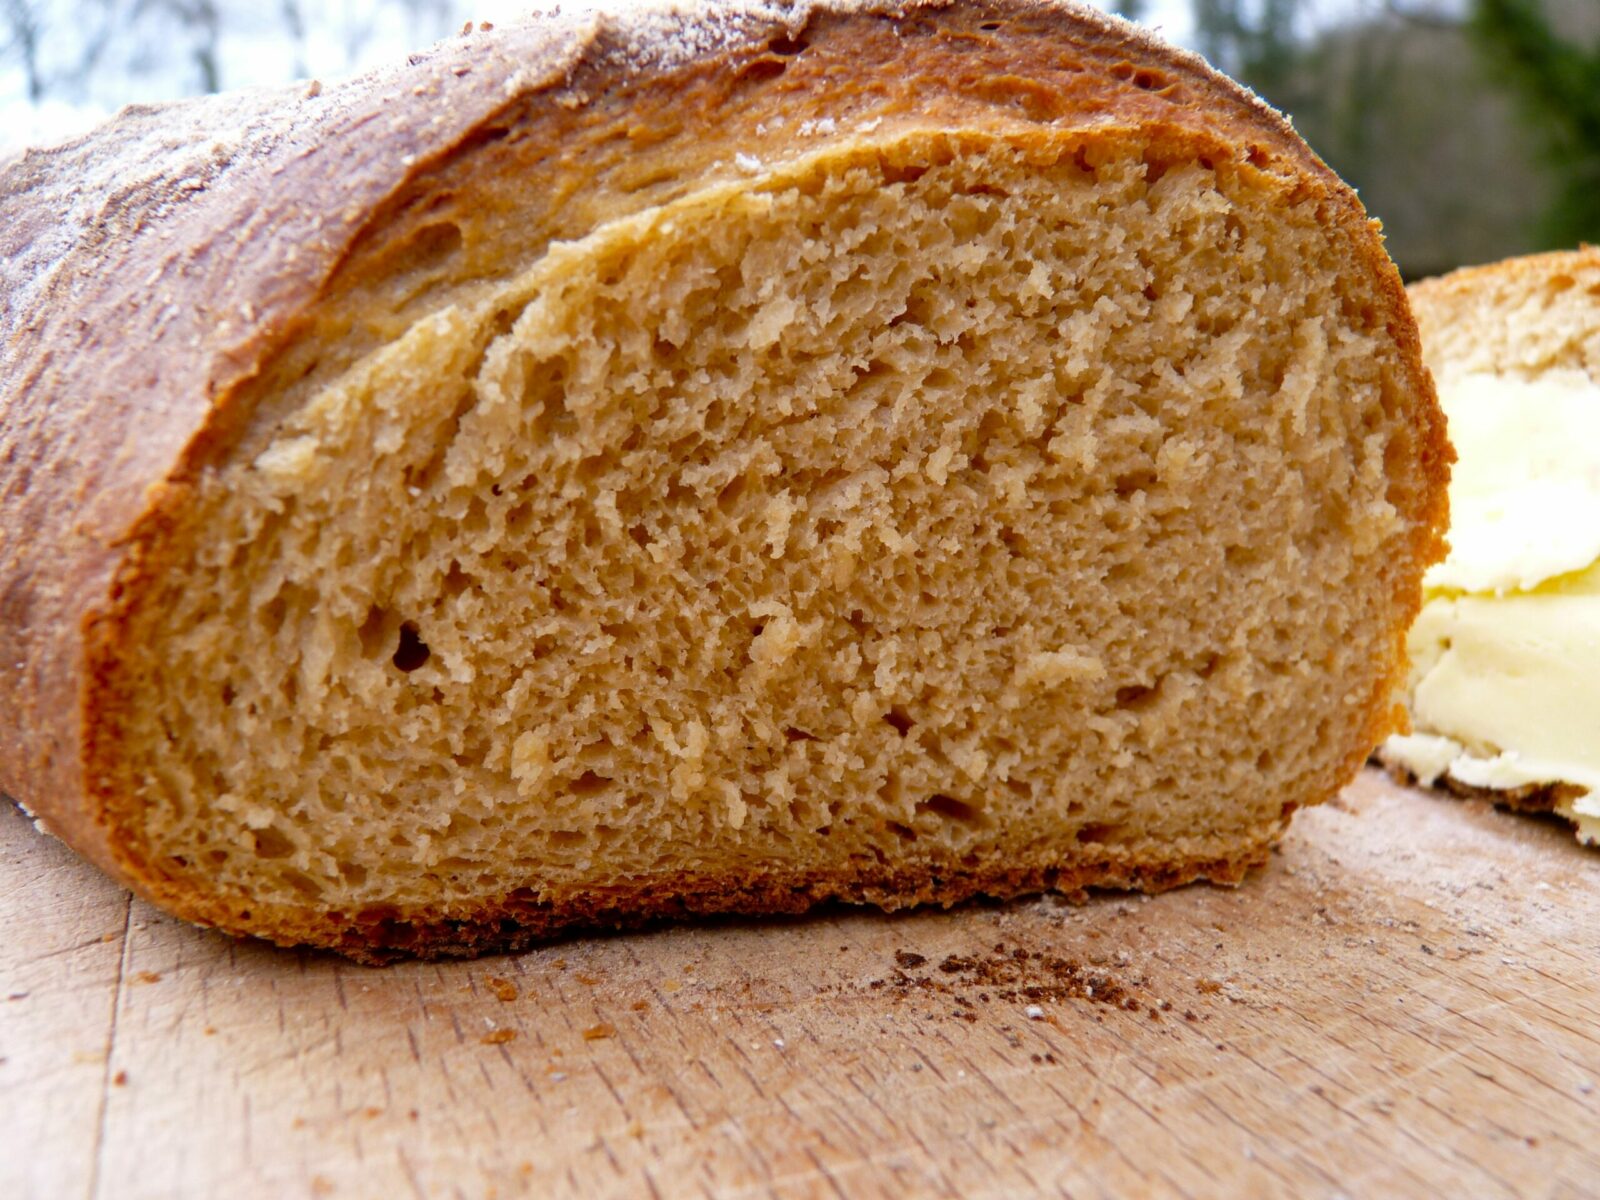  Aprenda a preparar pão caseiro em 1 minuto no microondas